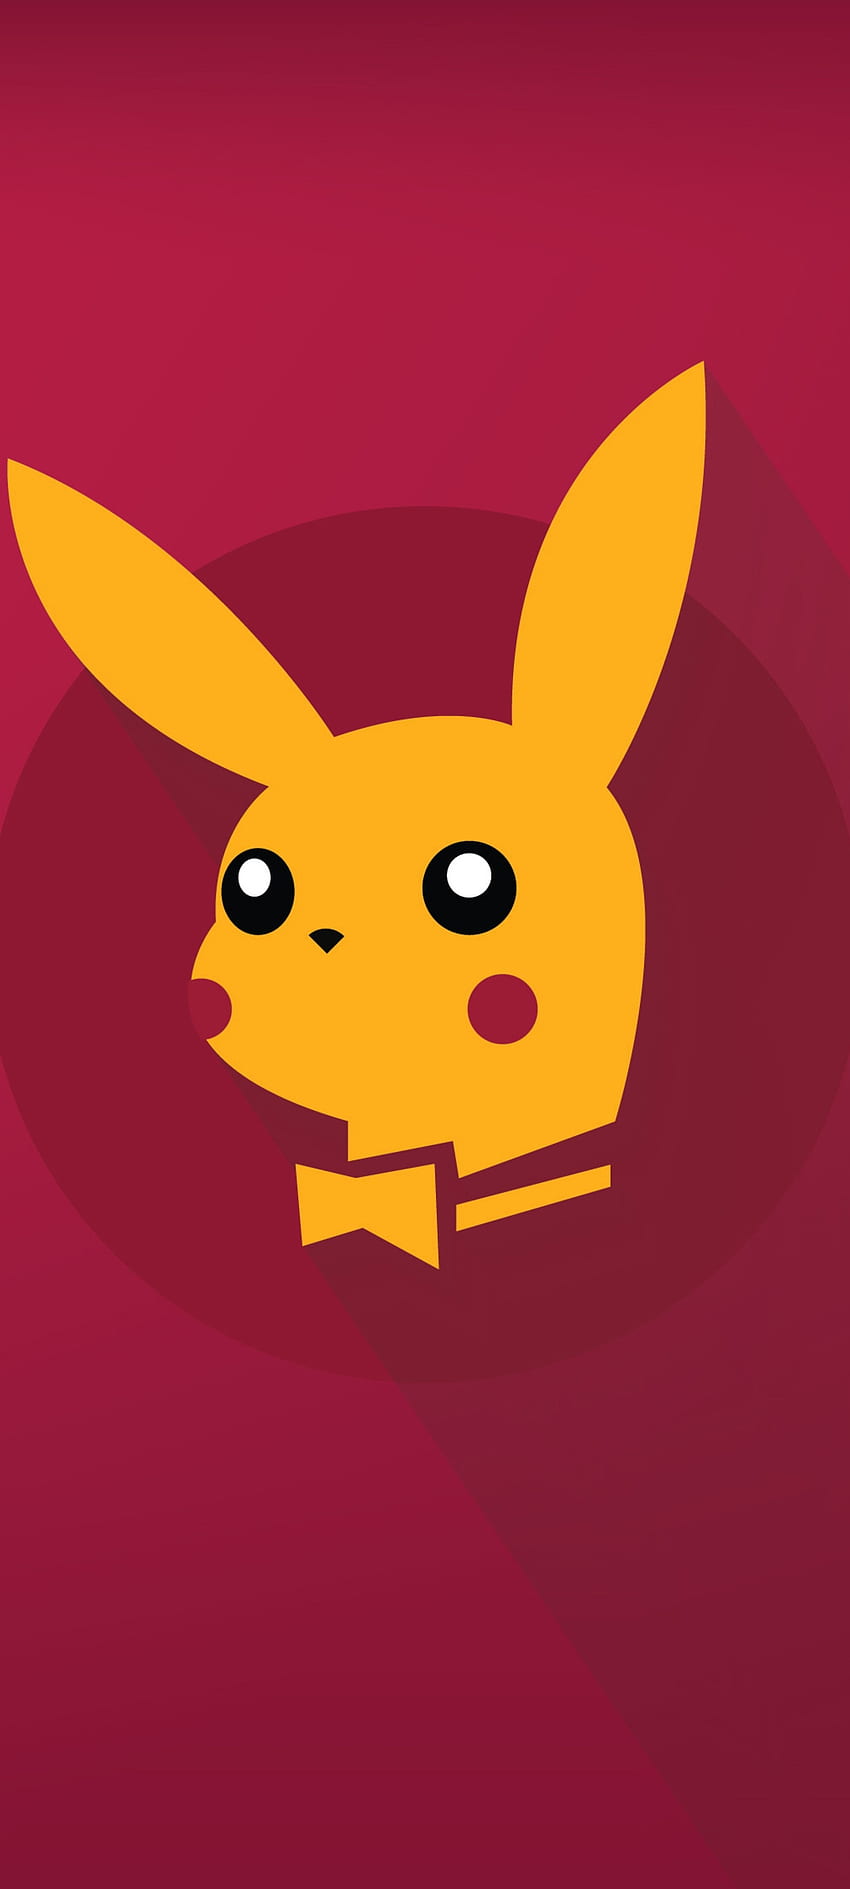 Pikachu - Pokemon, czerwony, sztuka, popiół, elektryczny, rysunek, żółty, uroczy, anime Tapeta na telefon HD